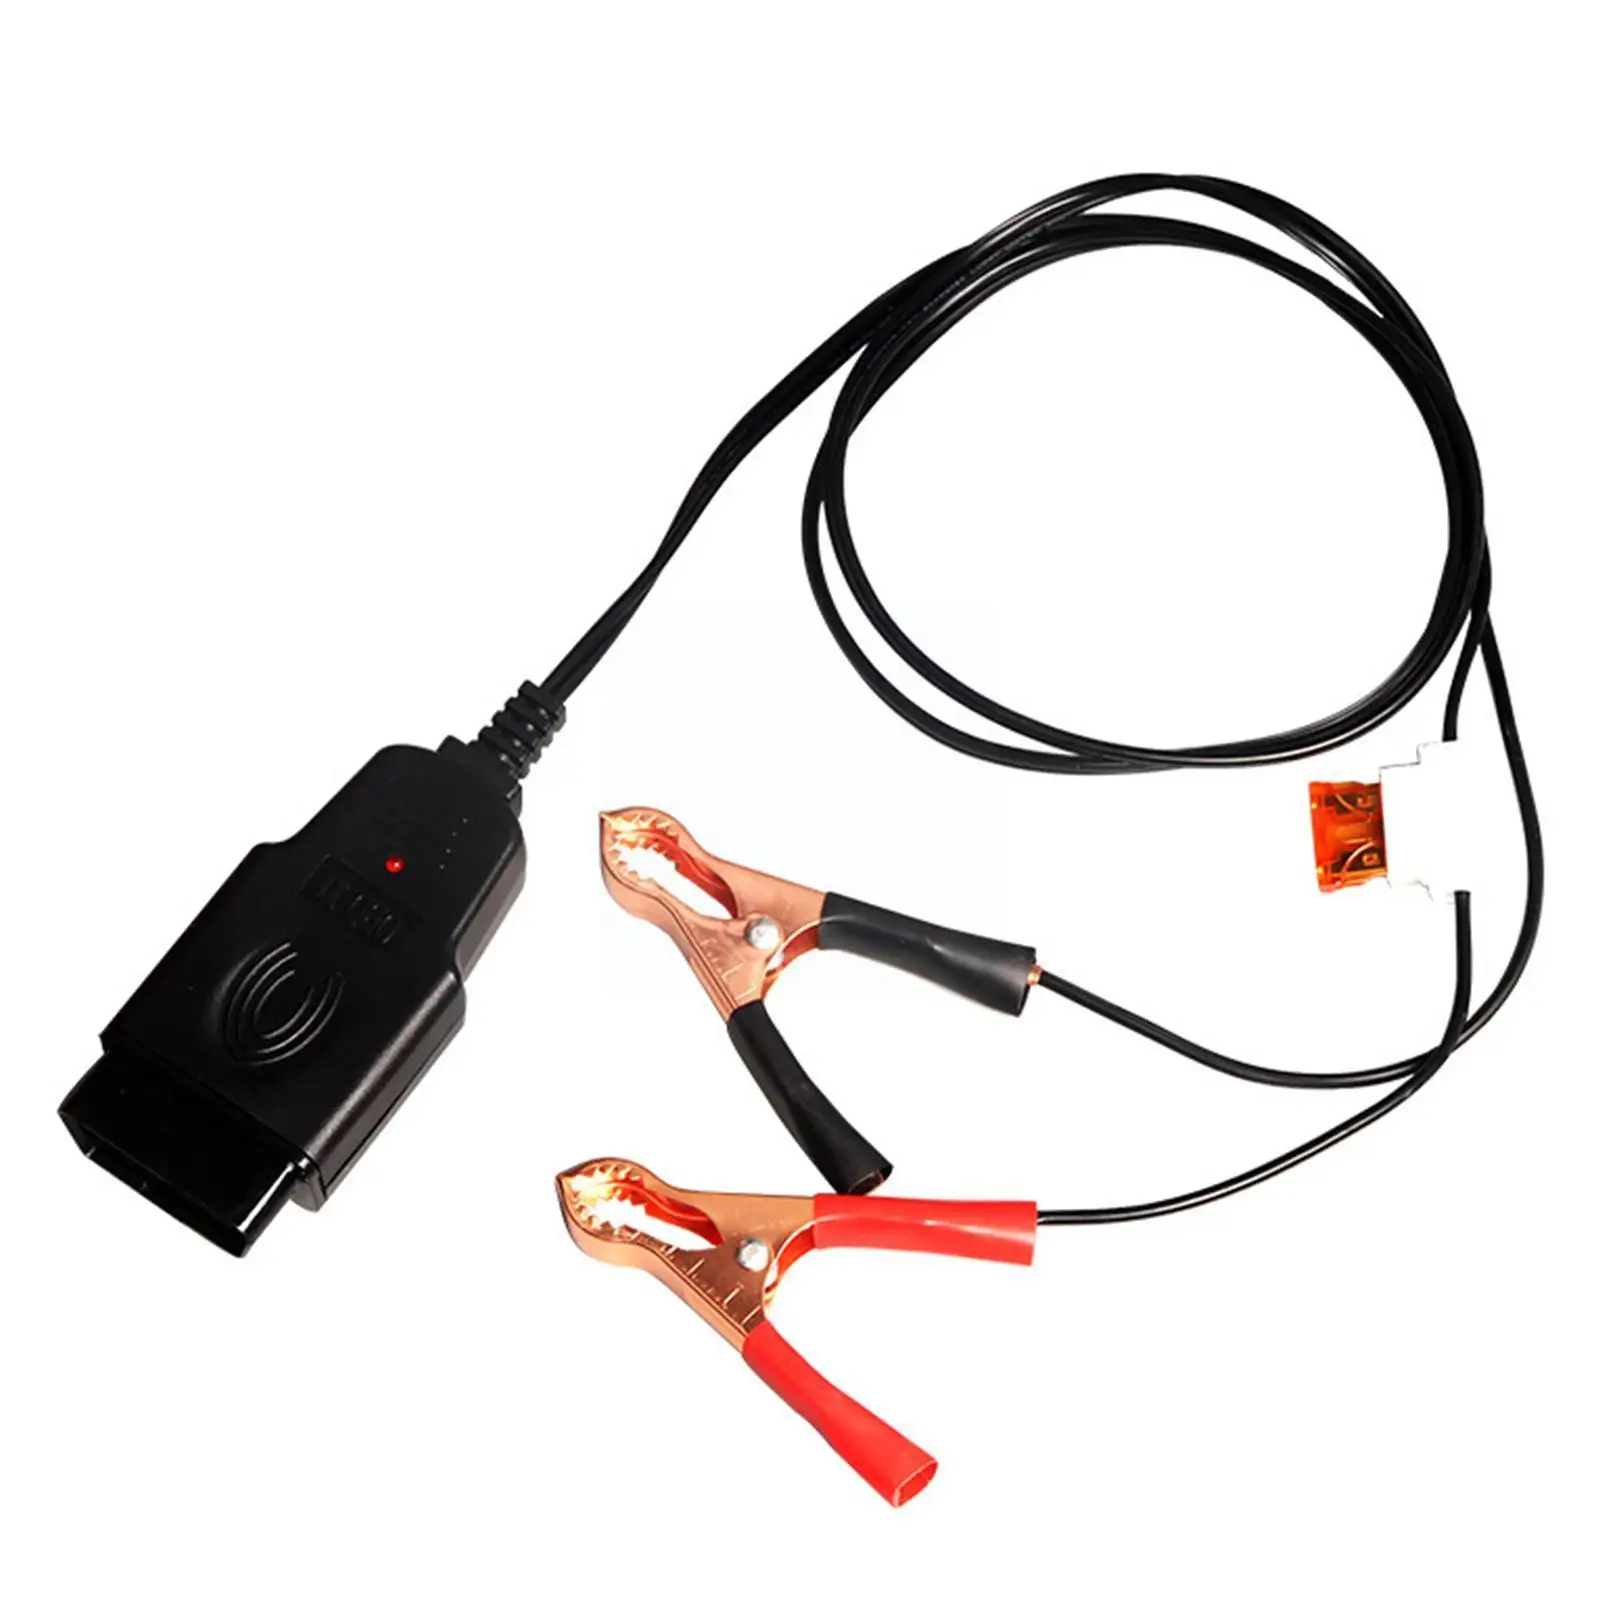 

Шнур с функцией отключения питания и памяти, инструмент для замены автомобильного аккумулятора Obd, инструмент для утечки, инструмент для аккумулятора, автомобильный кабель для аварийного обнаружения B6s4